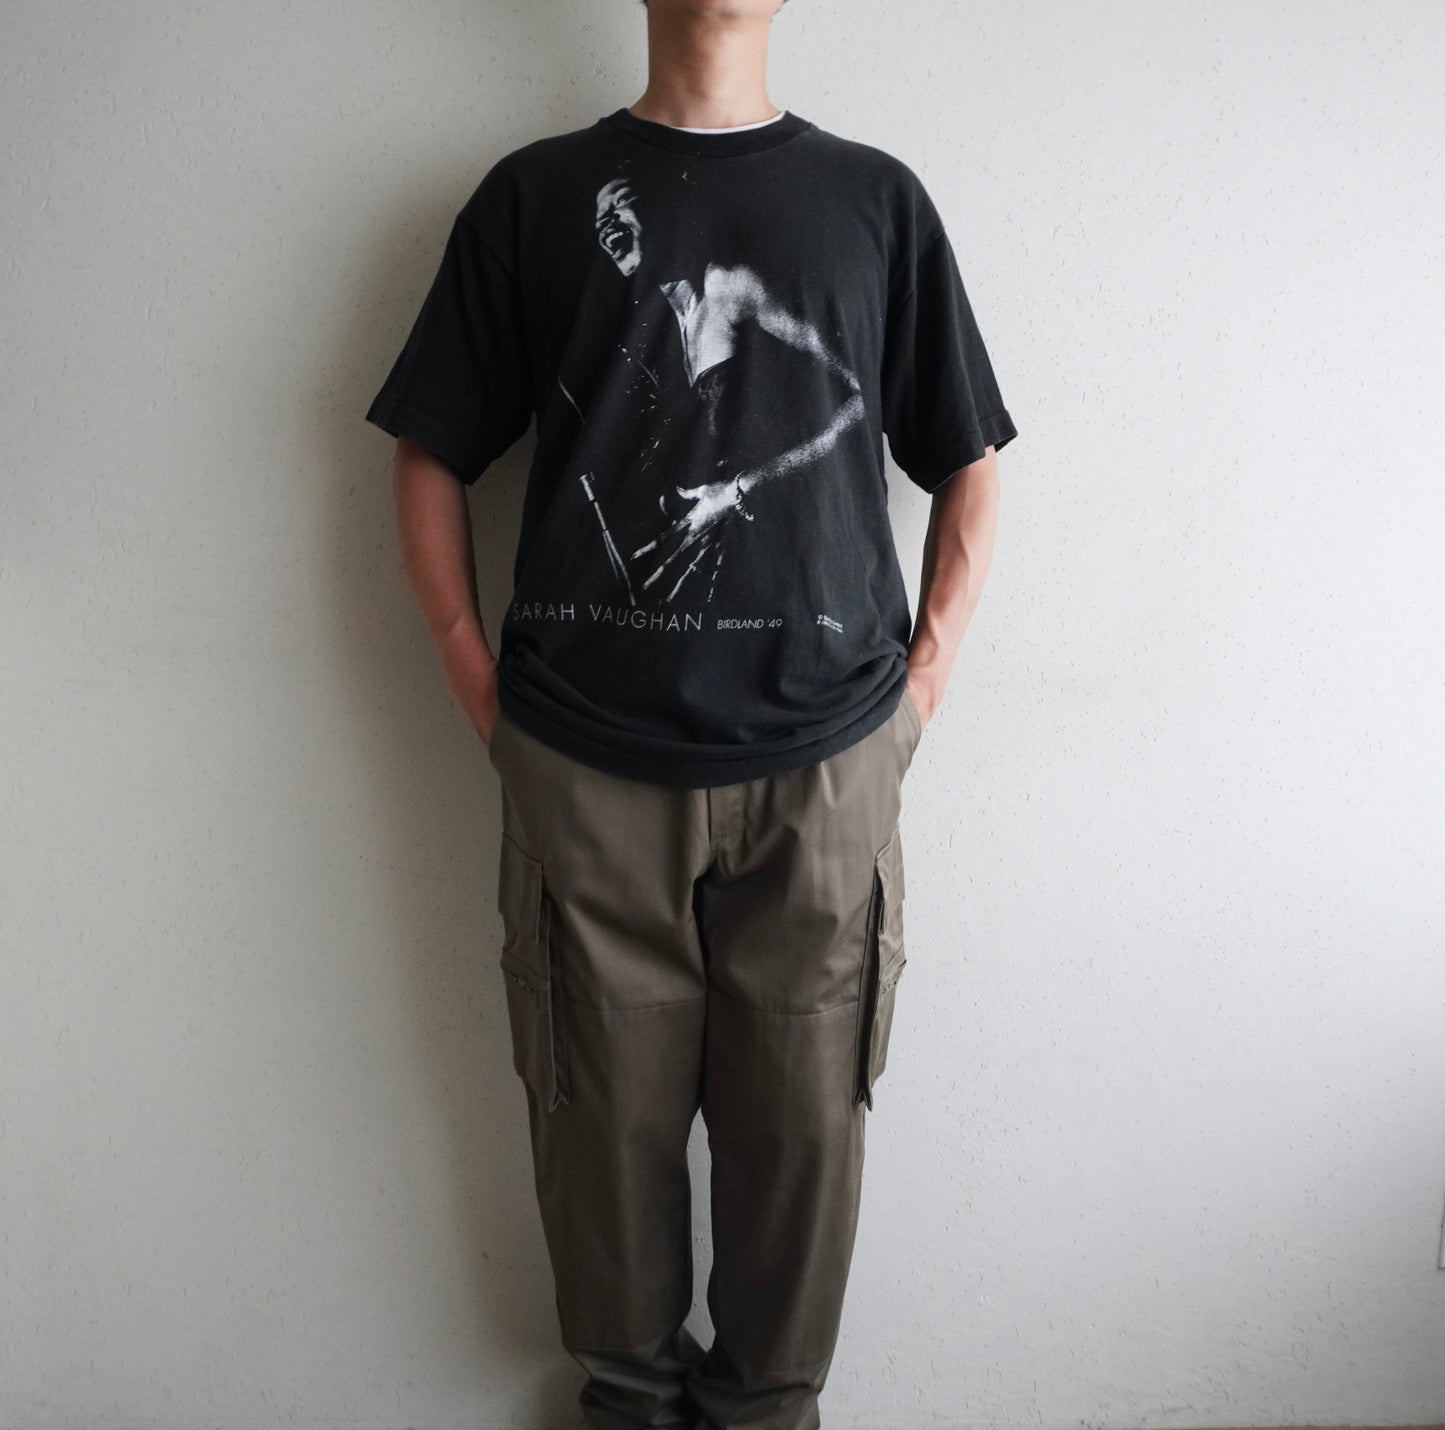 90s " Sarah Vaughan " T-shirt Made in USA